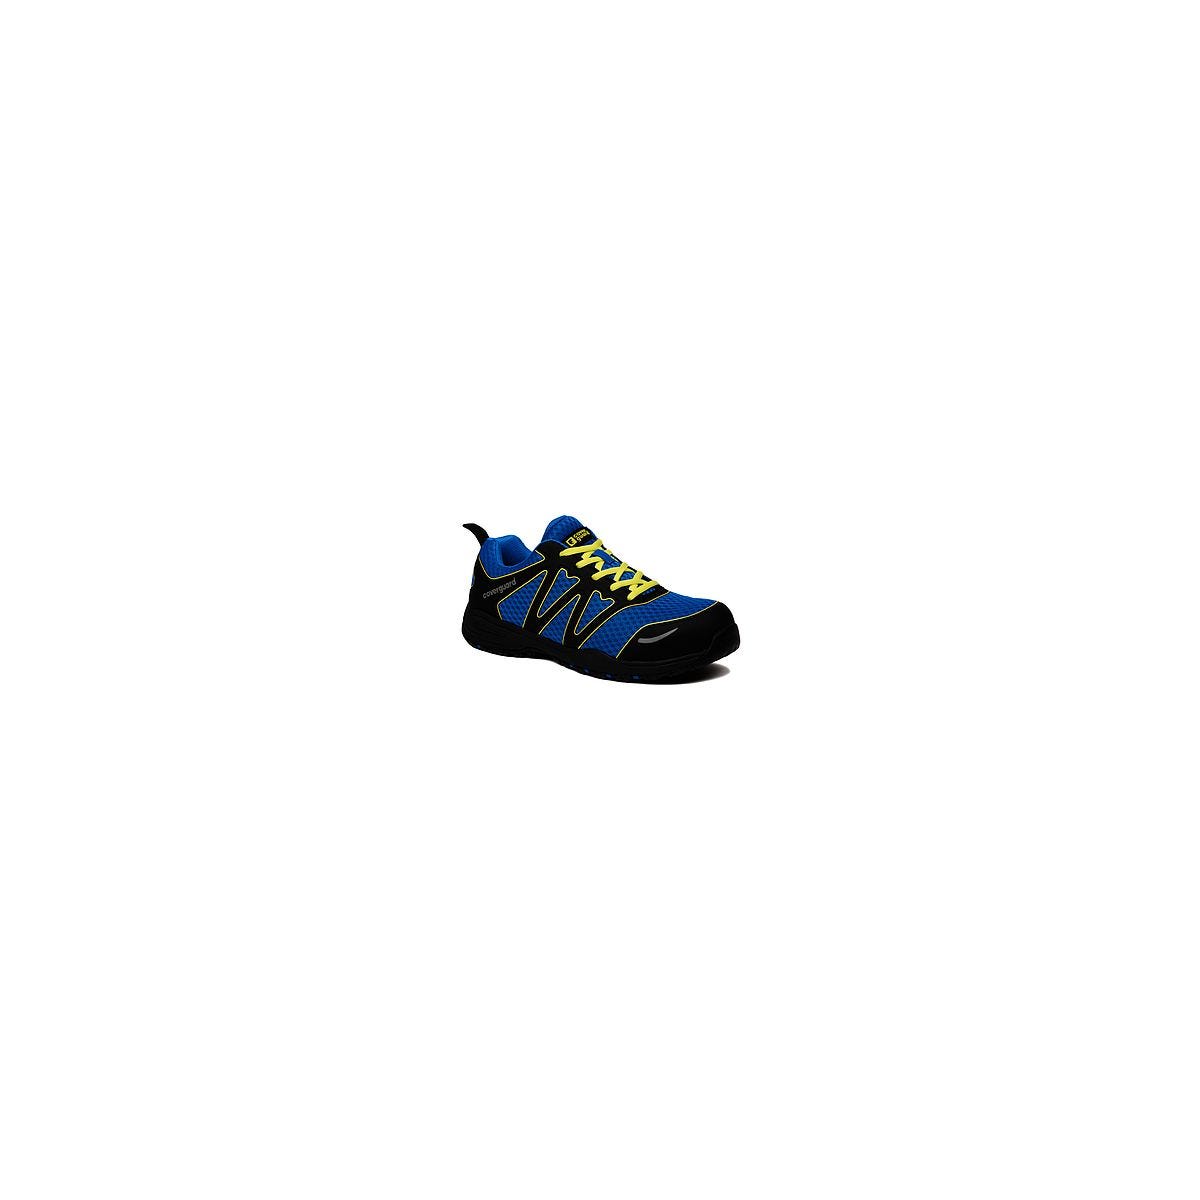 Chaussures de sécurité GYPSE S1P Basse Bleu/Noir - Coverguard - Taille 45 0